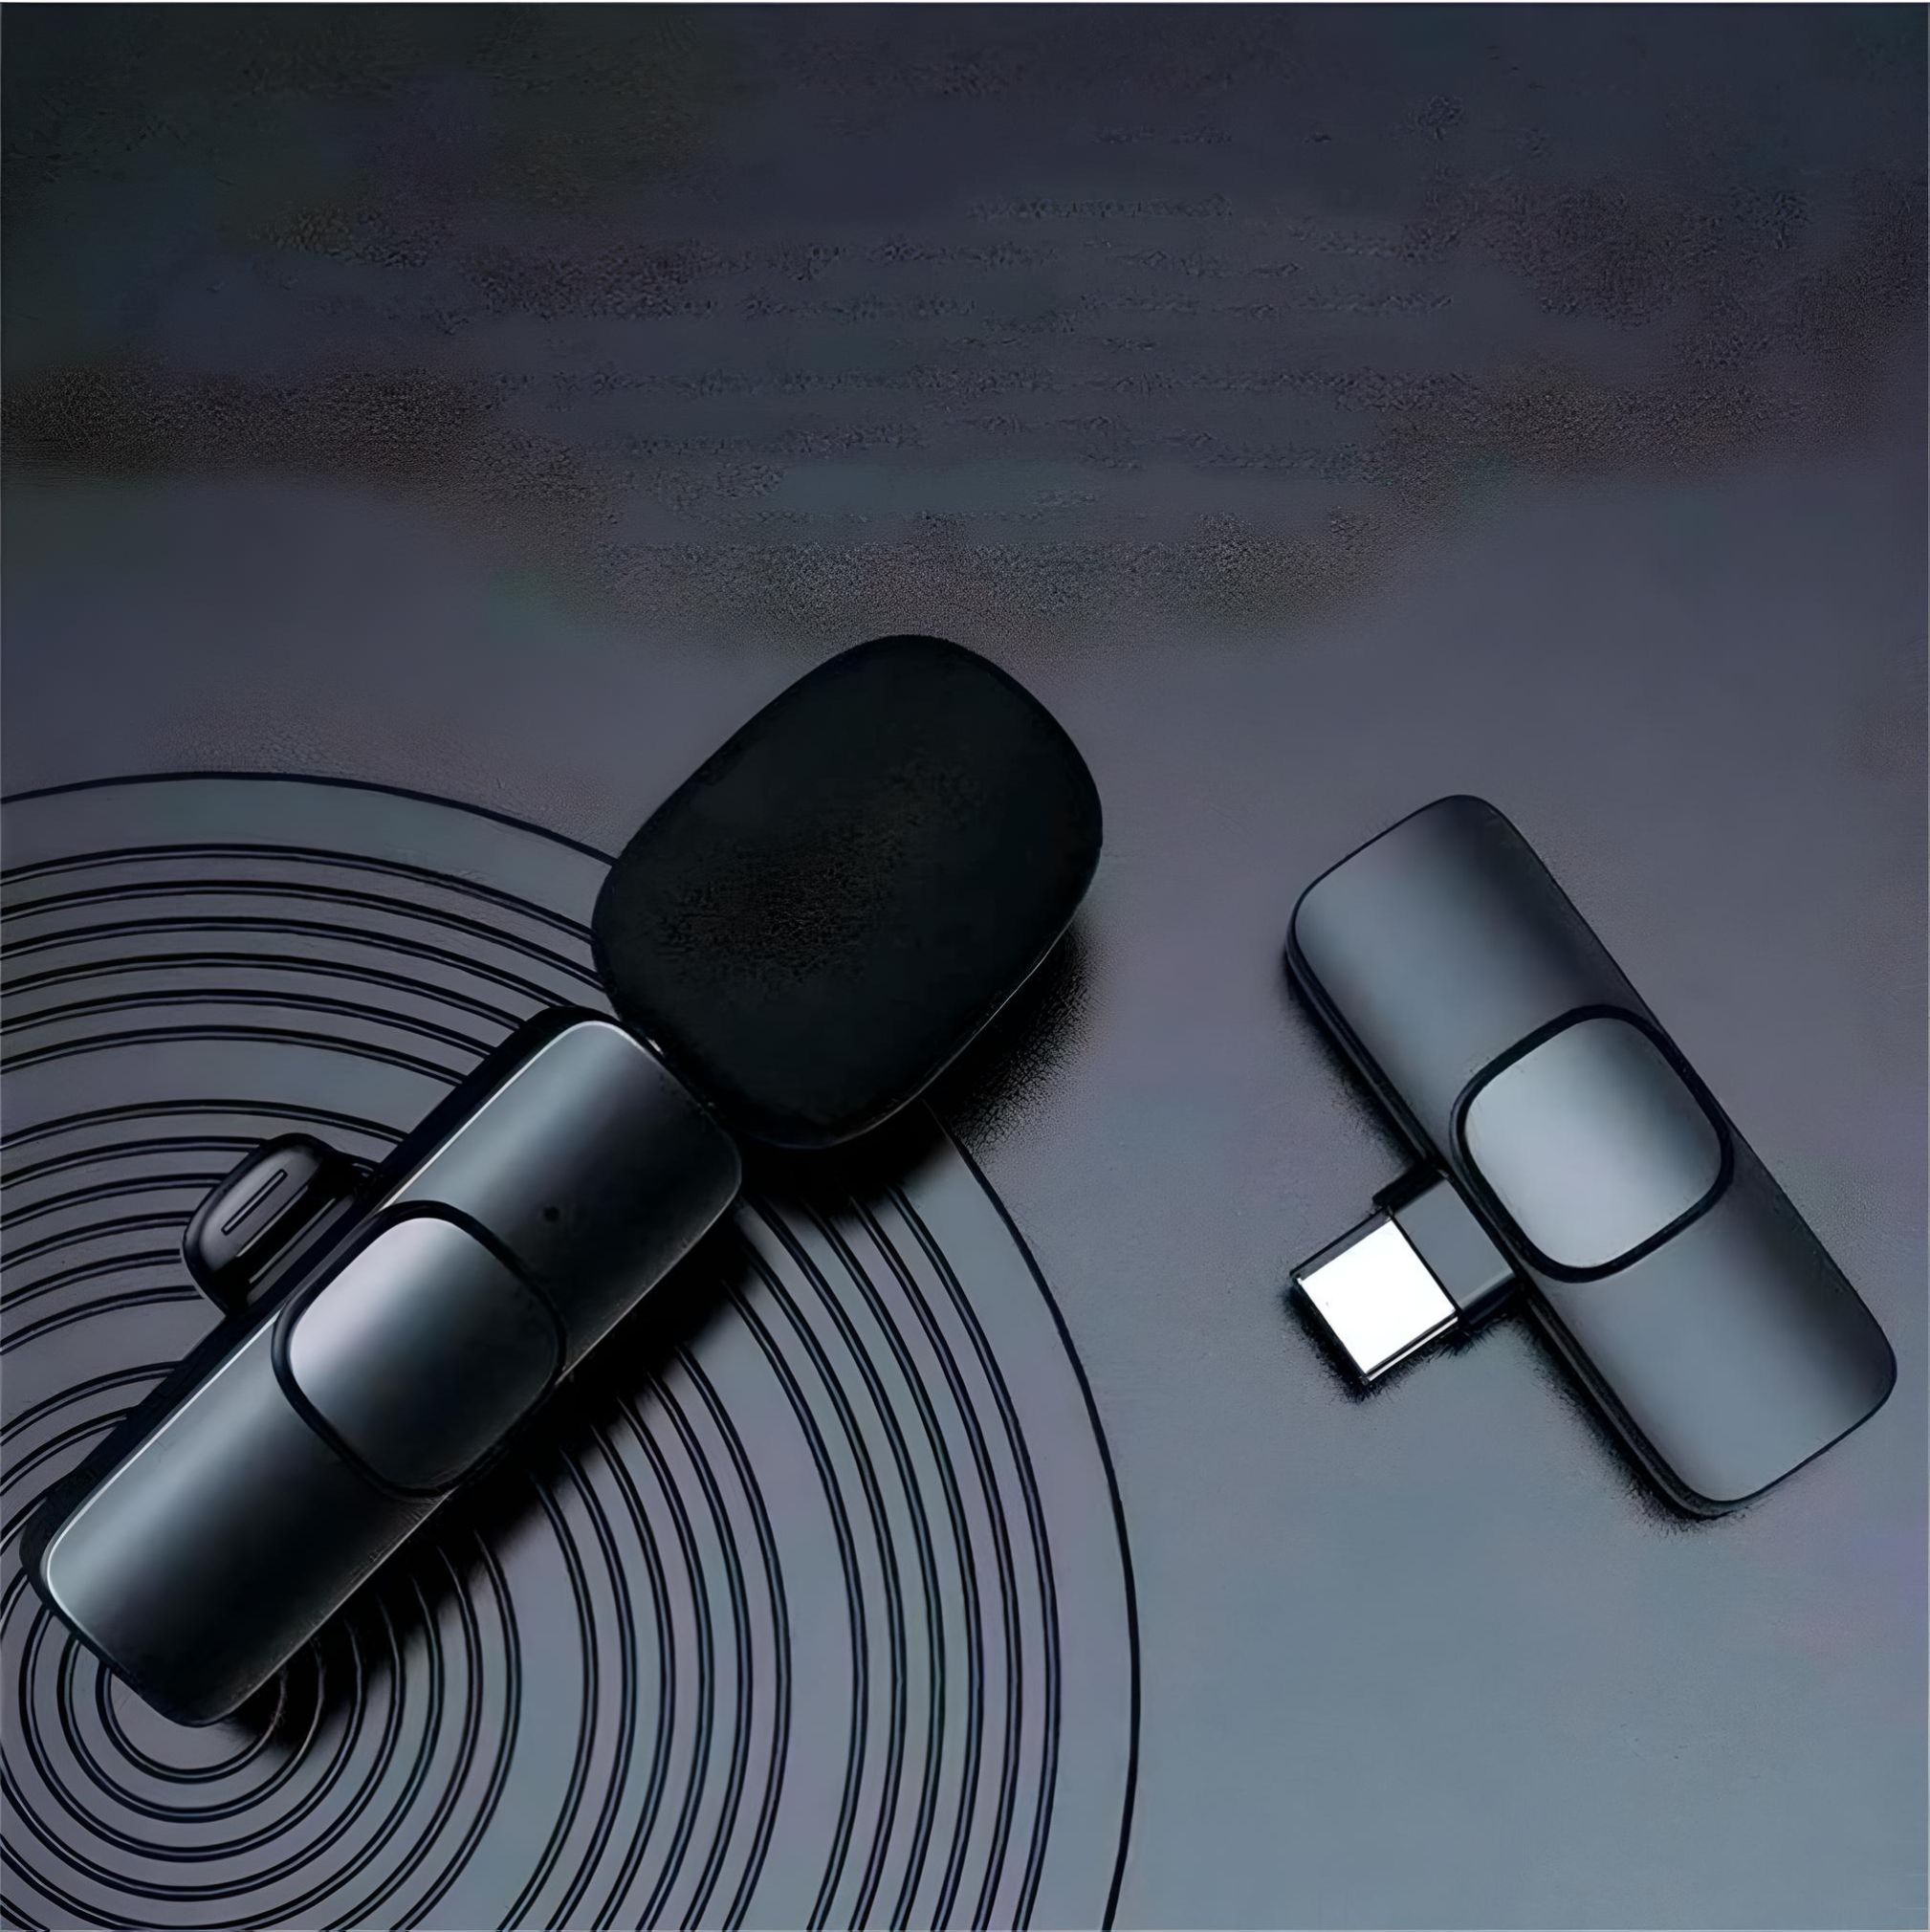 Micrófono inalámbrico solapa iPhone Lavalier 2 micrófonos color negro, fácil de usar y transportar.